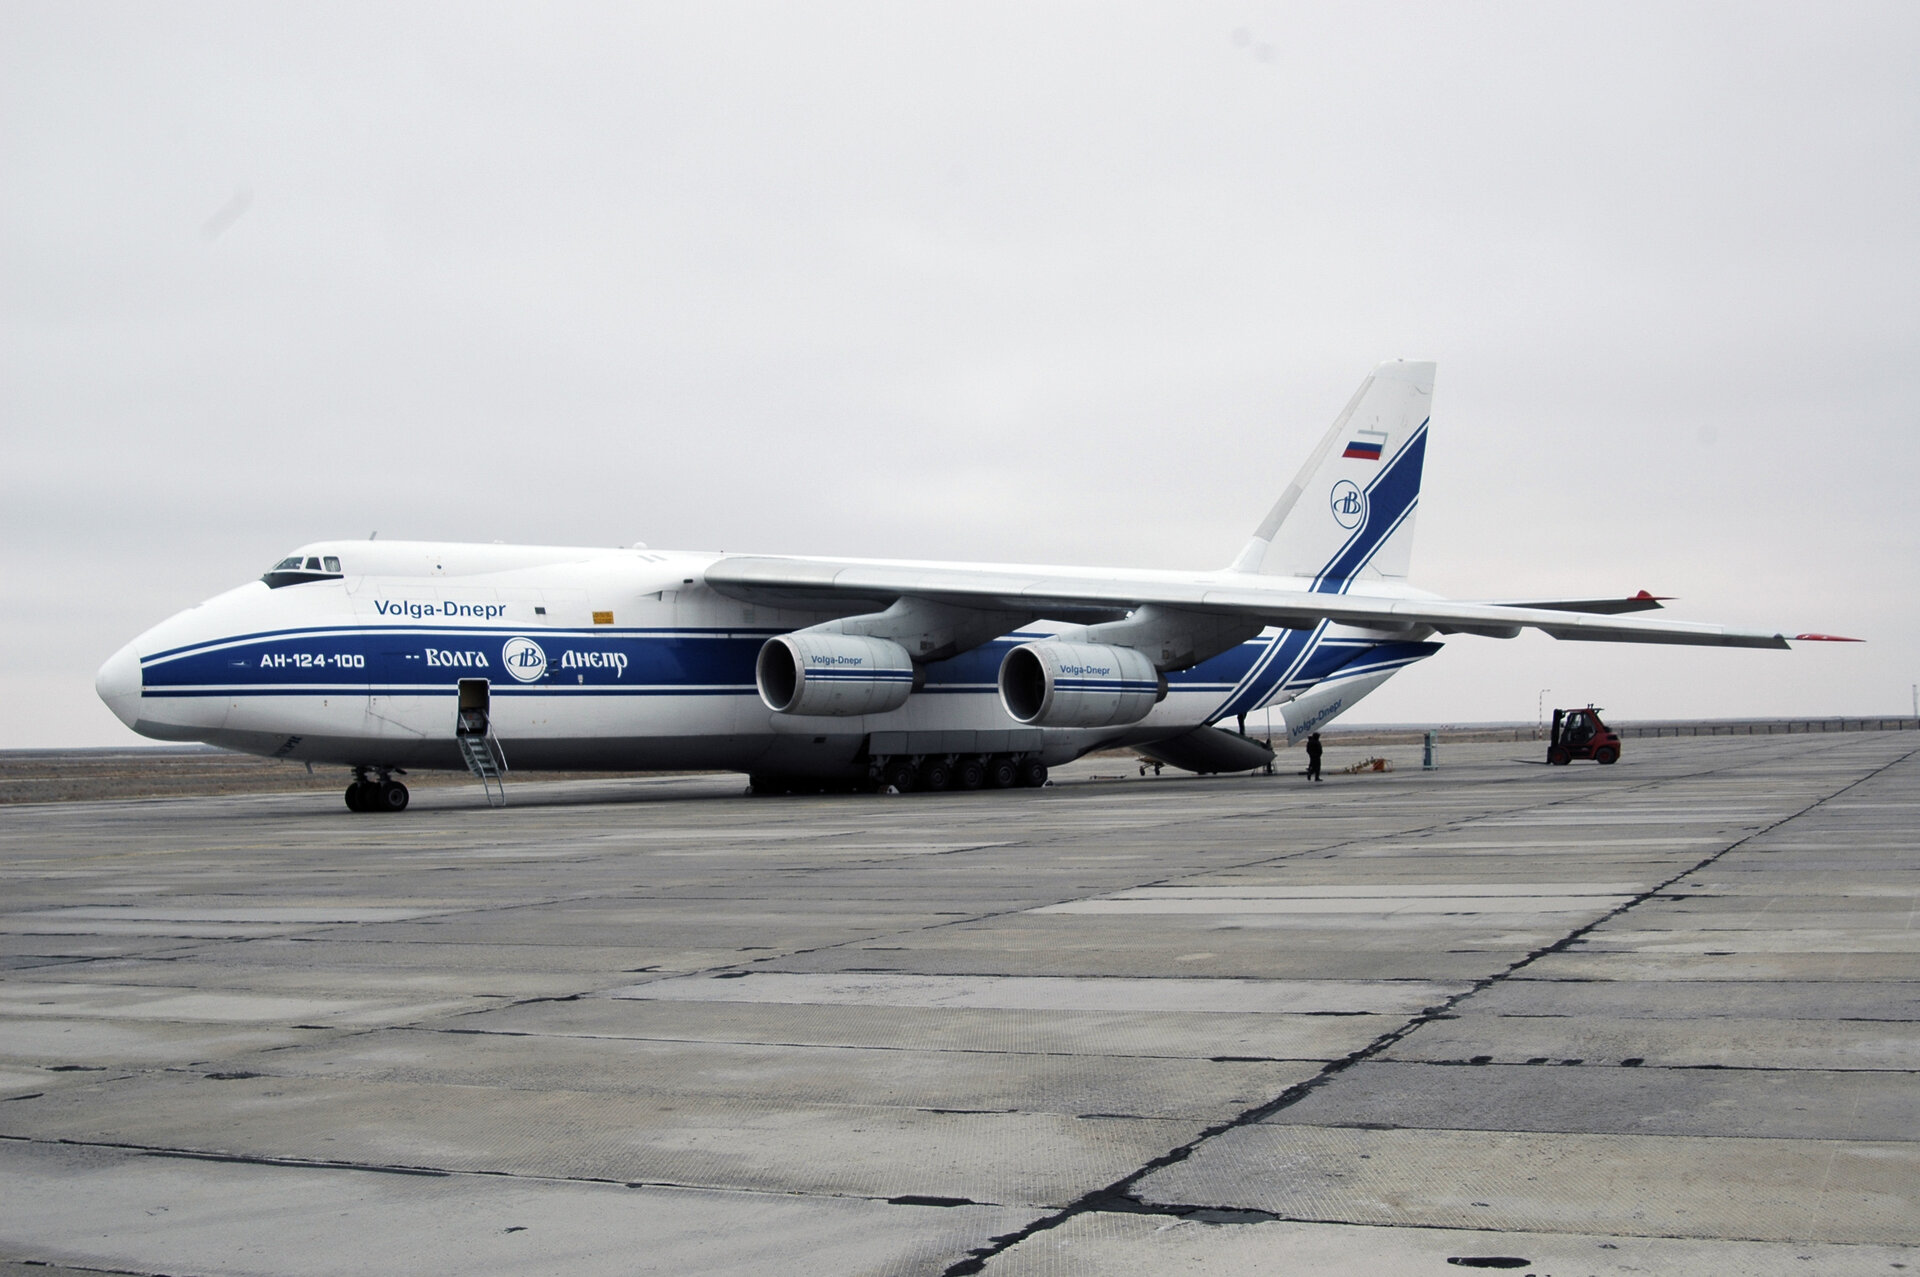 GIOVE-B arrives at Baikonur